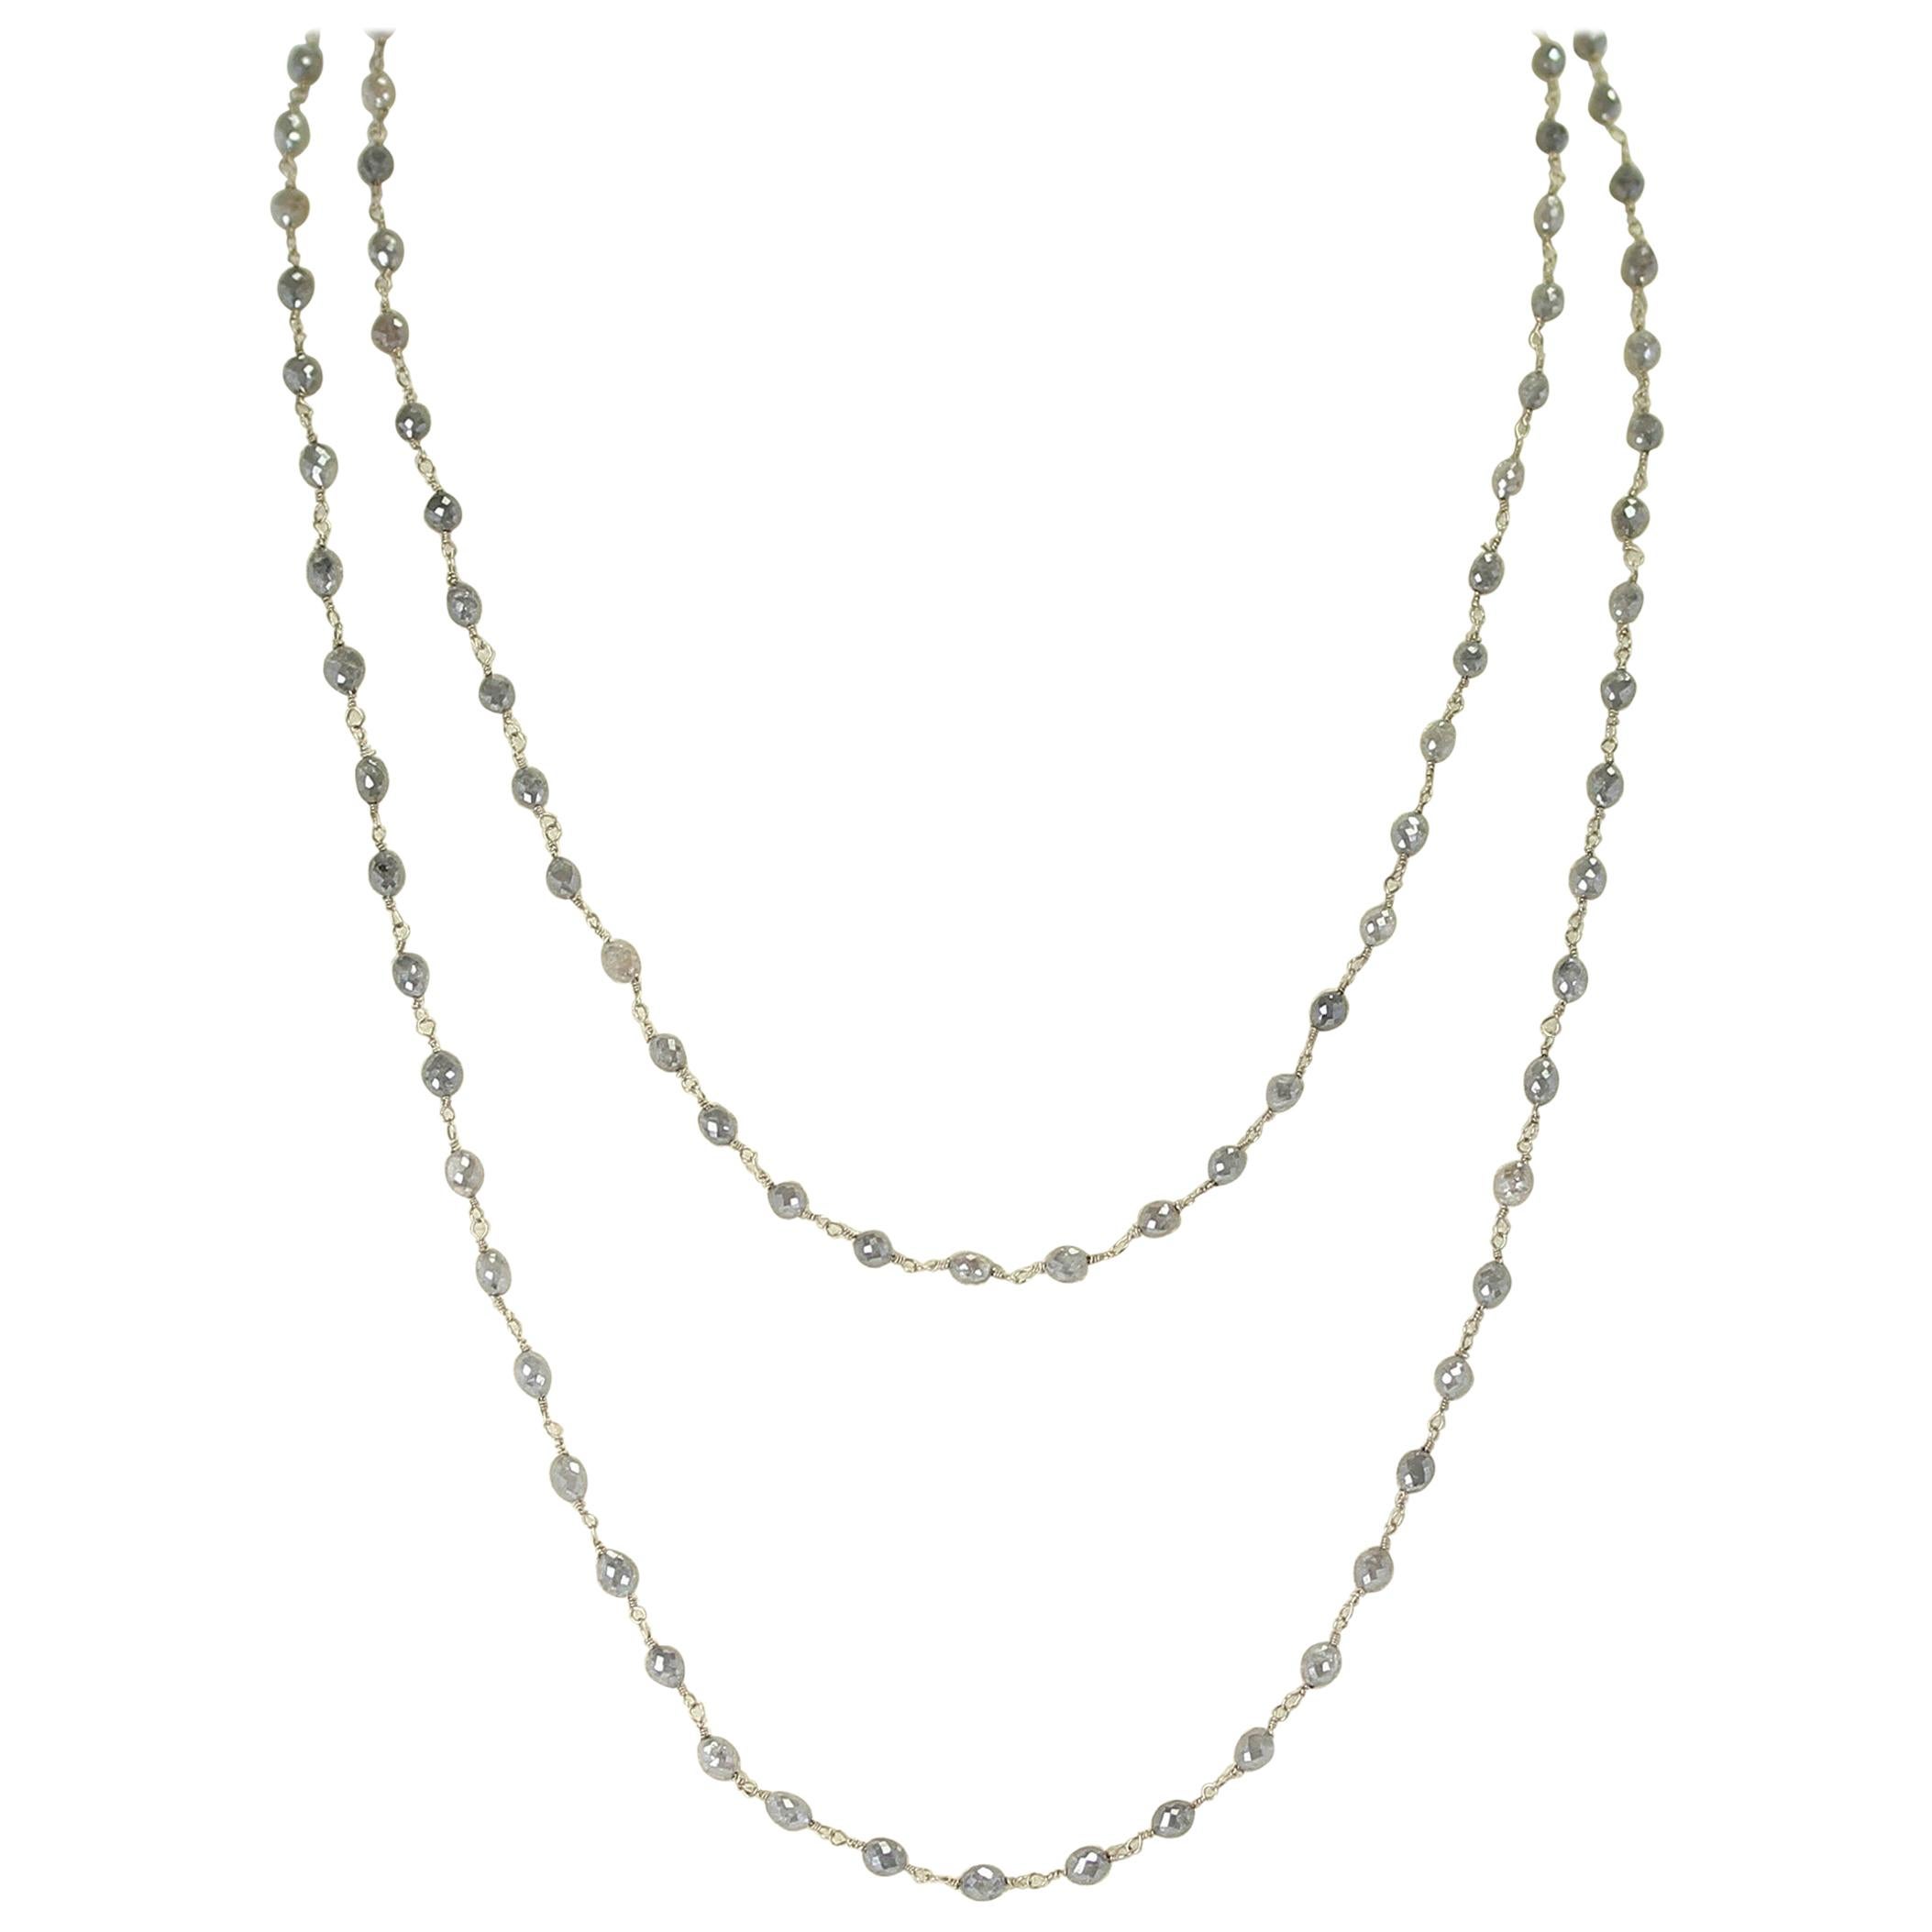 Halskette aus echtem grauen Diamanten in Trommelform mit Perlen und Draht, 18 Karat Weiß